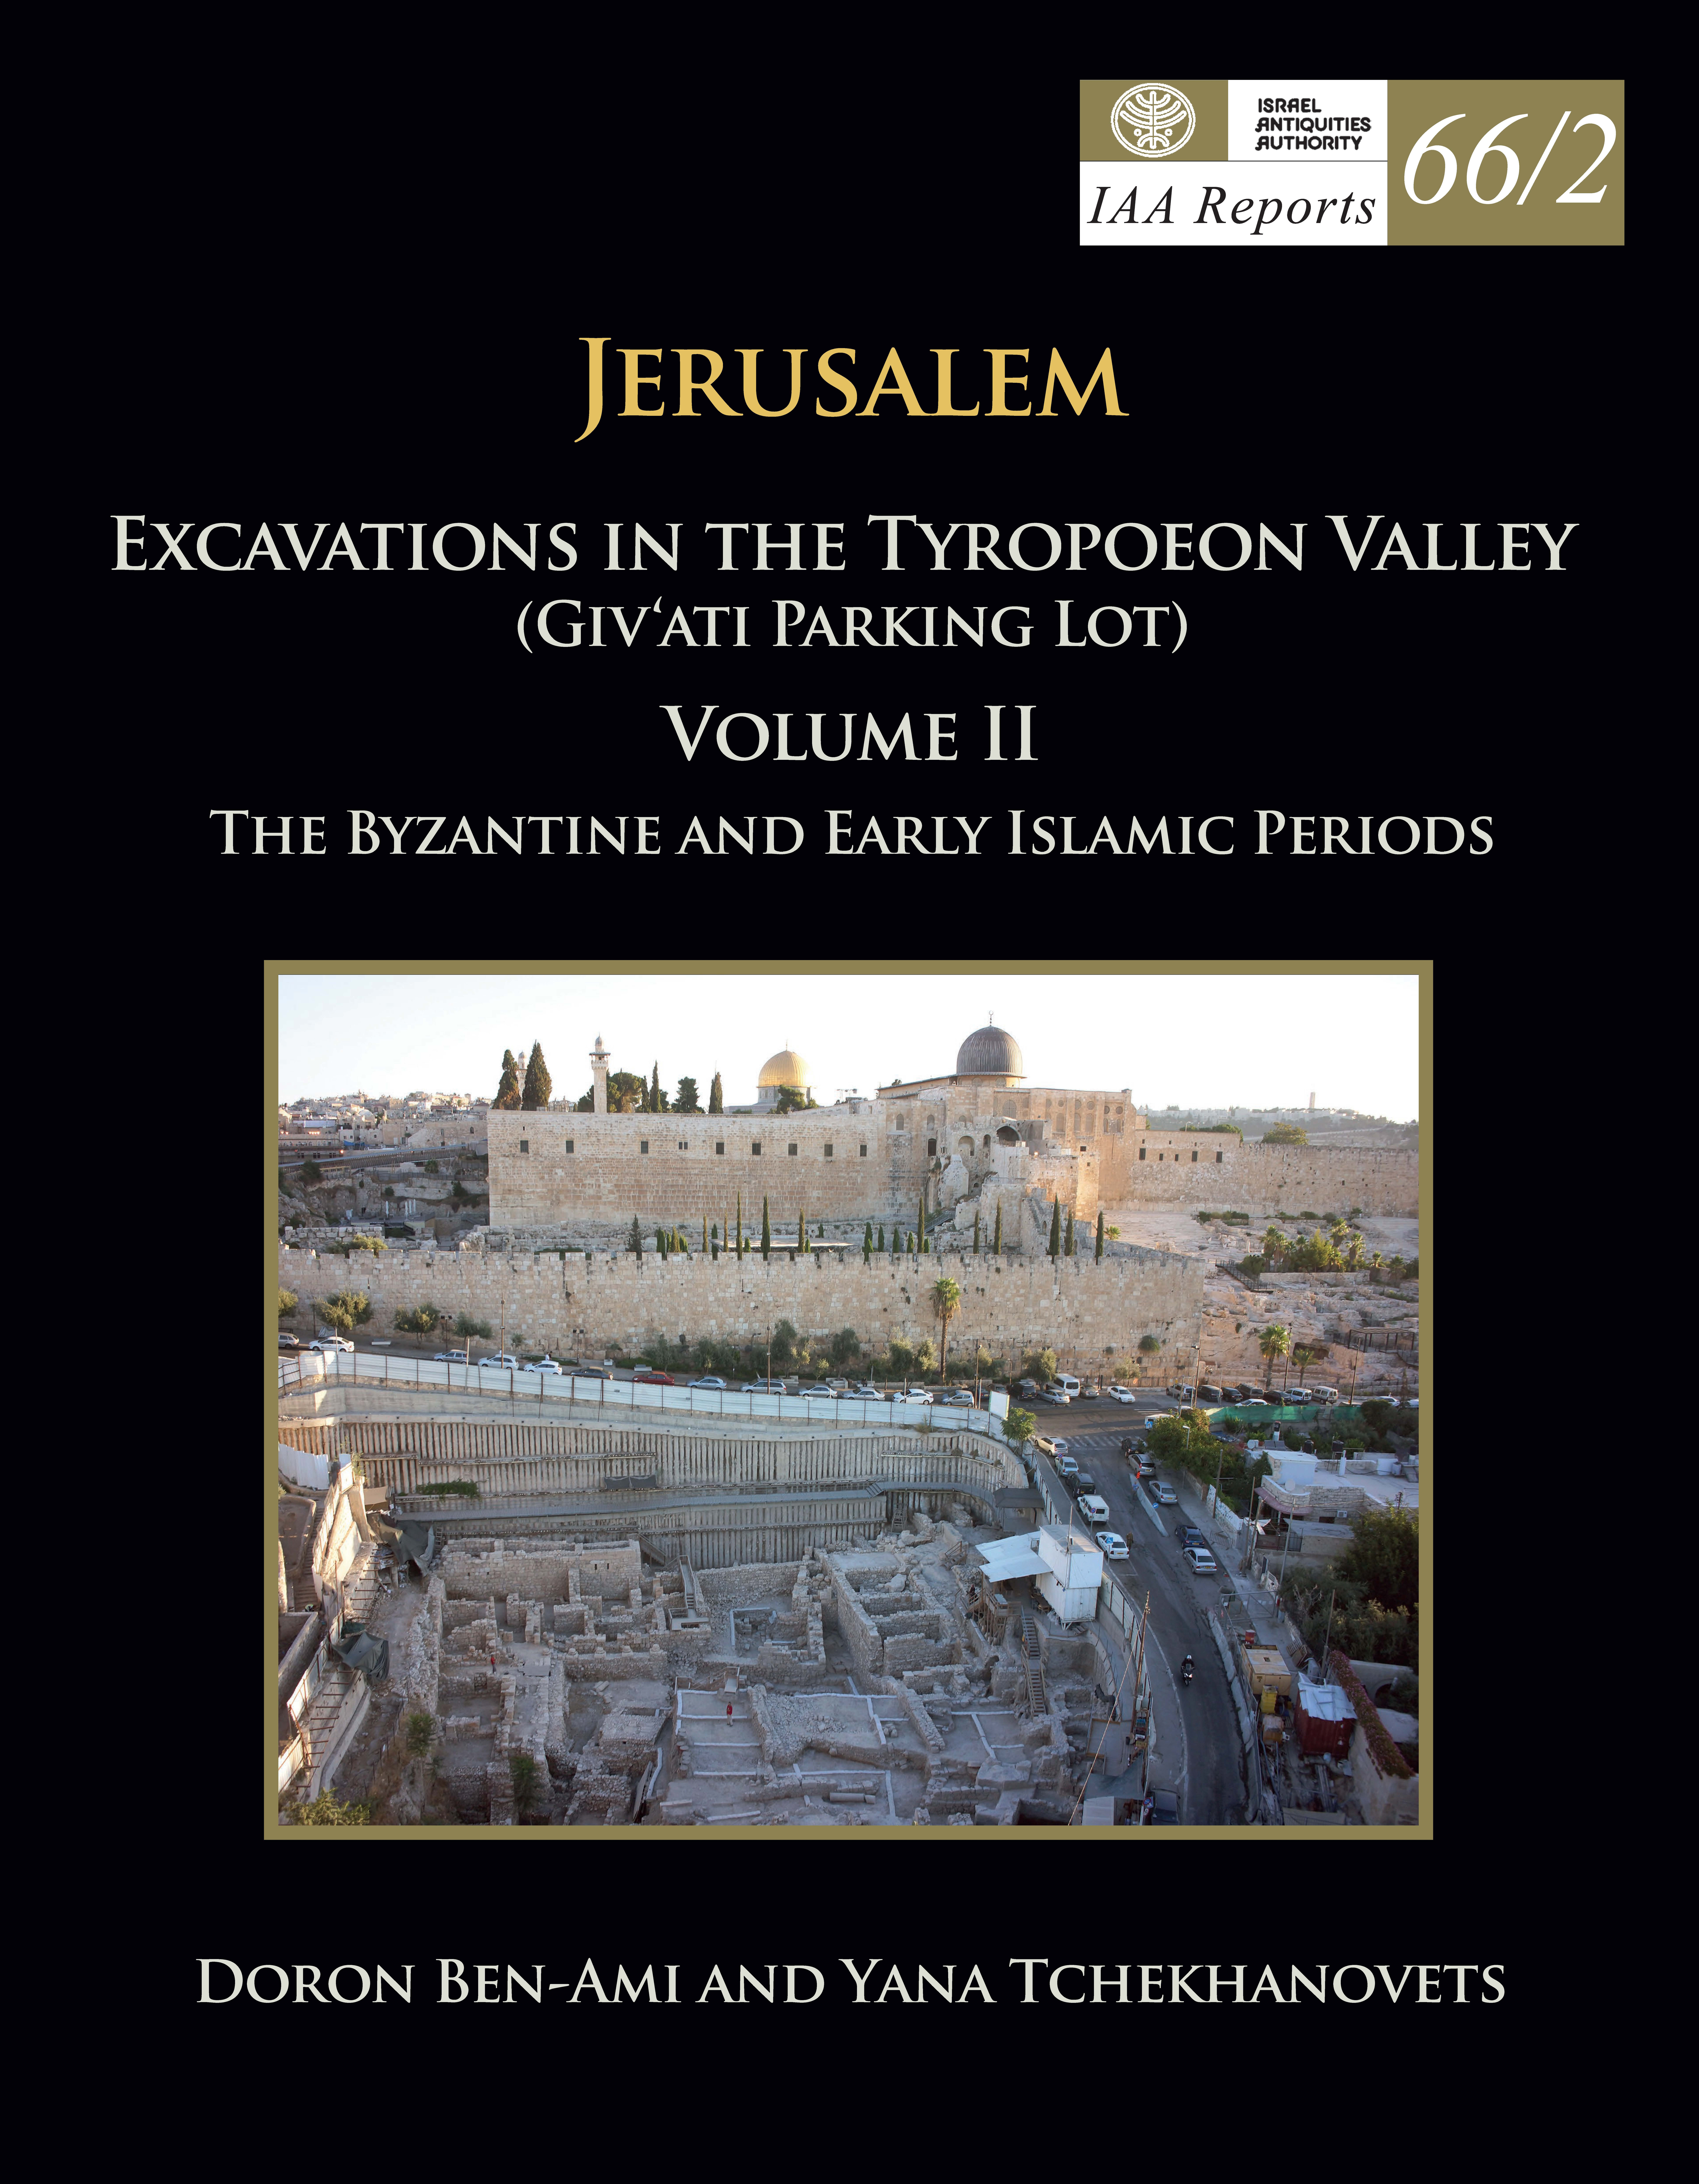 IAA Reports 66/2, ירושלים חפירות בעמק הטירופיאון חניון גבעתי כרך: II התקופה הביזנטית והתקופות האיסלמיות הקדומות